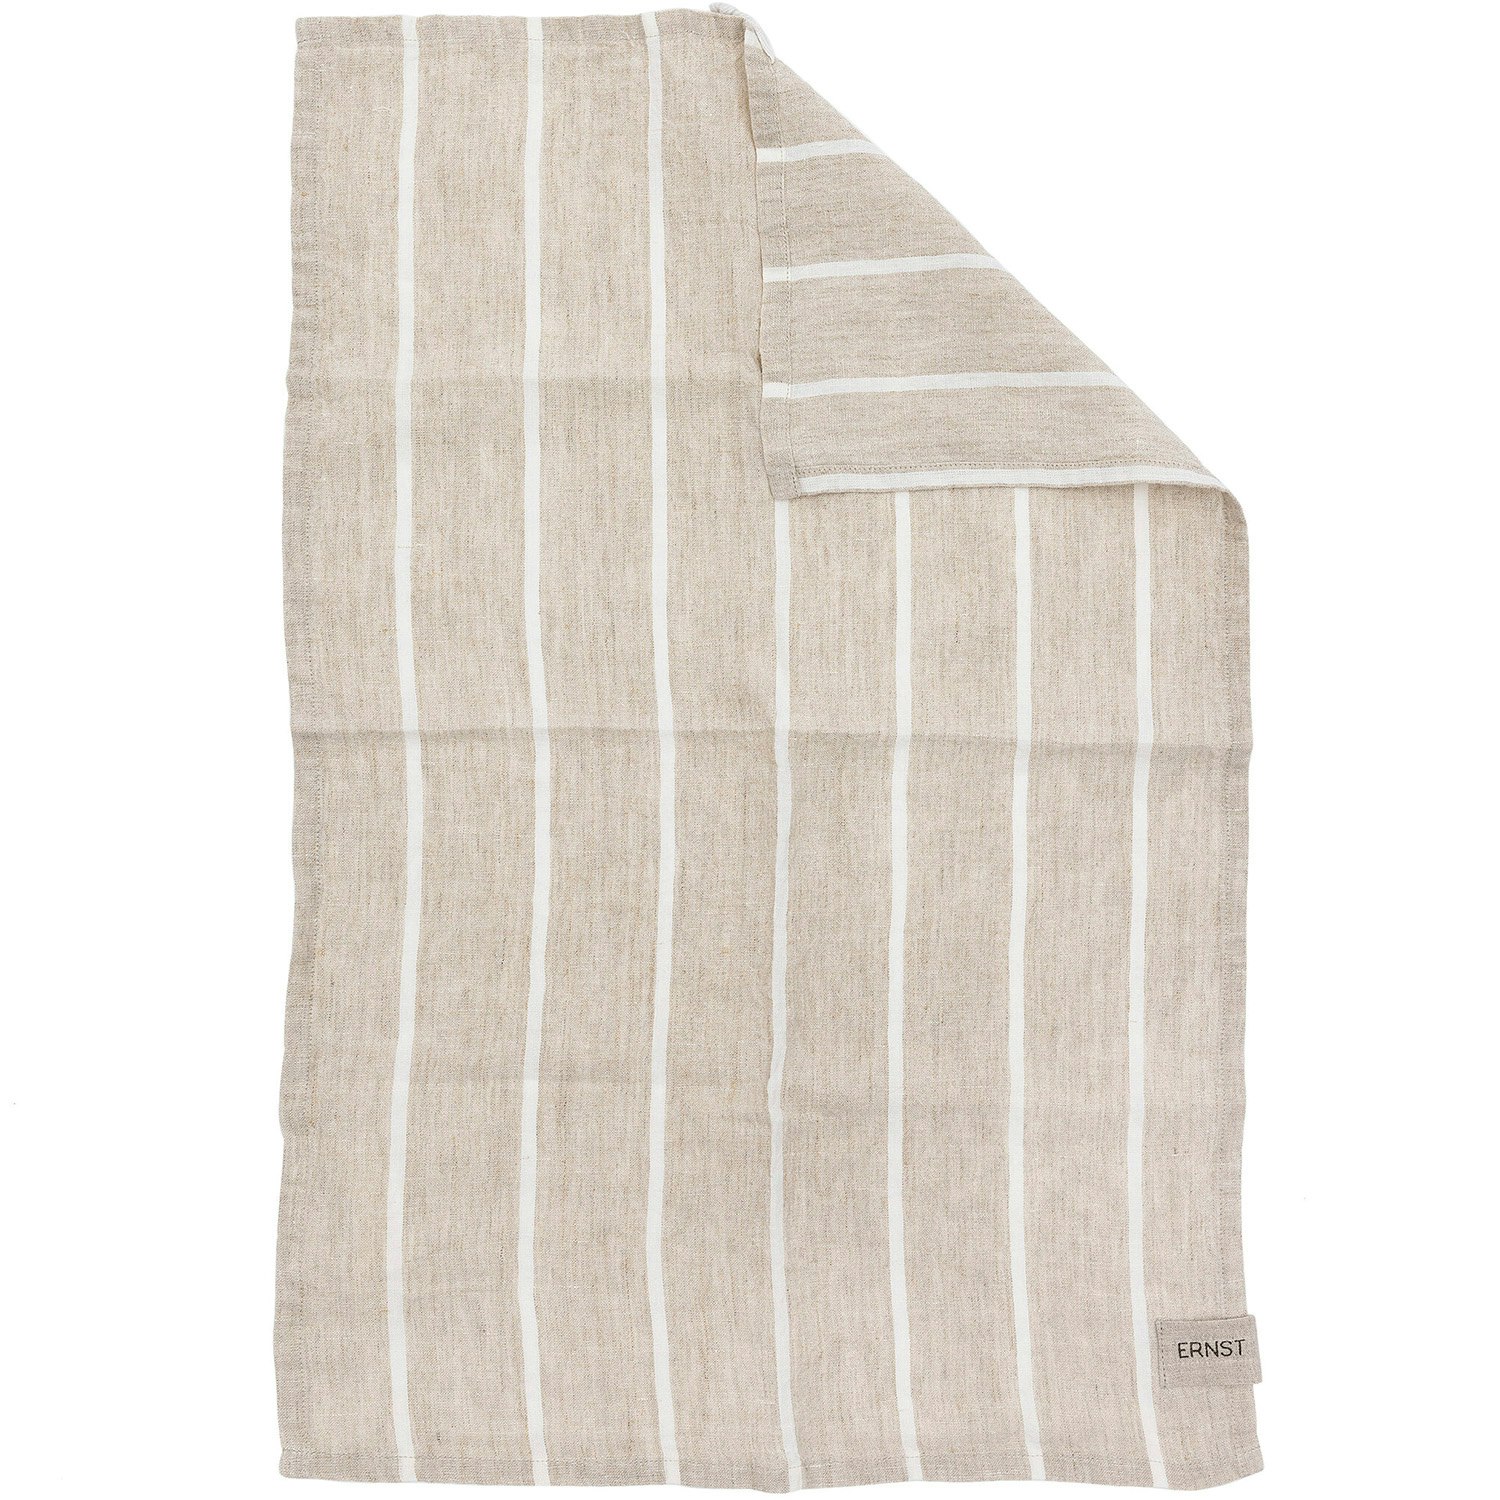 https://royaldesign.com/image/2/ernst-kitchen-towel-striped-47x70-cm-6